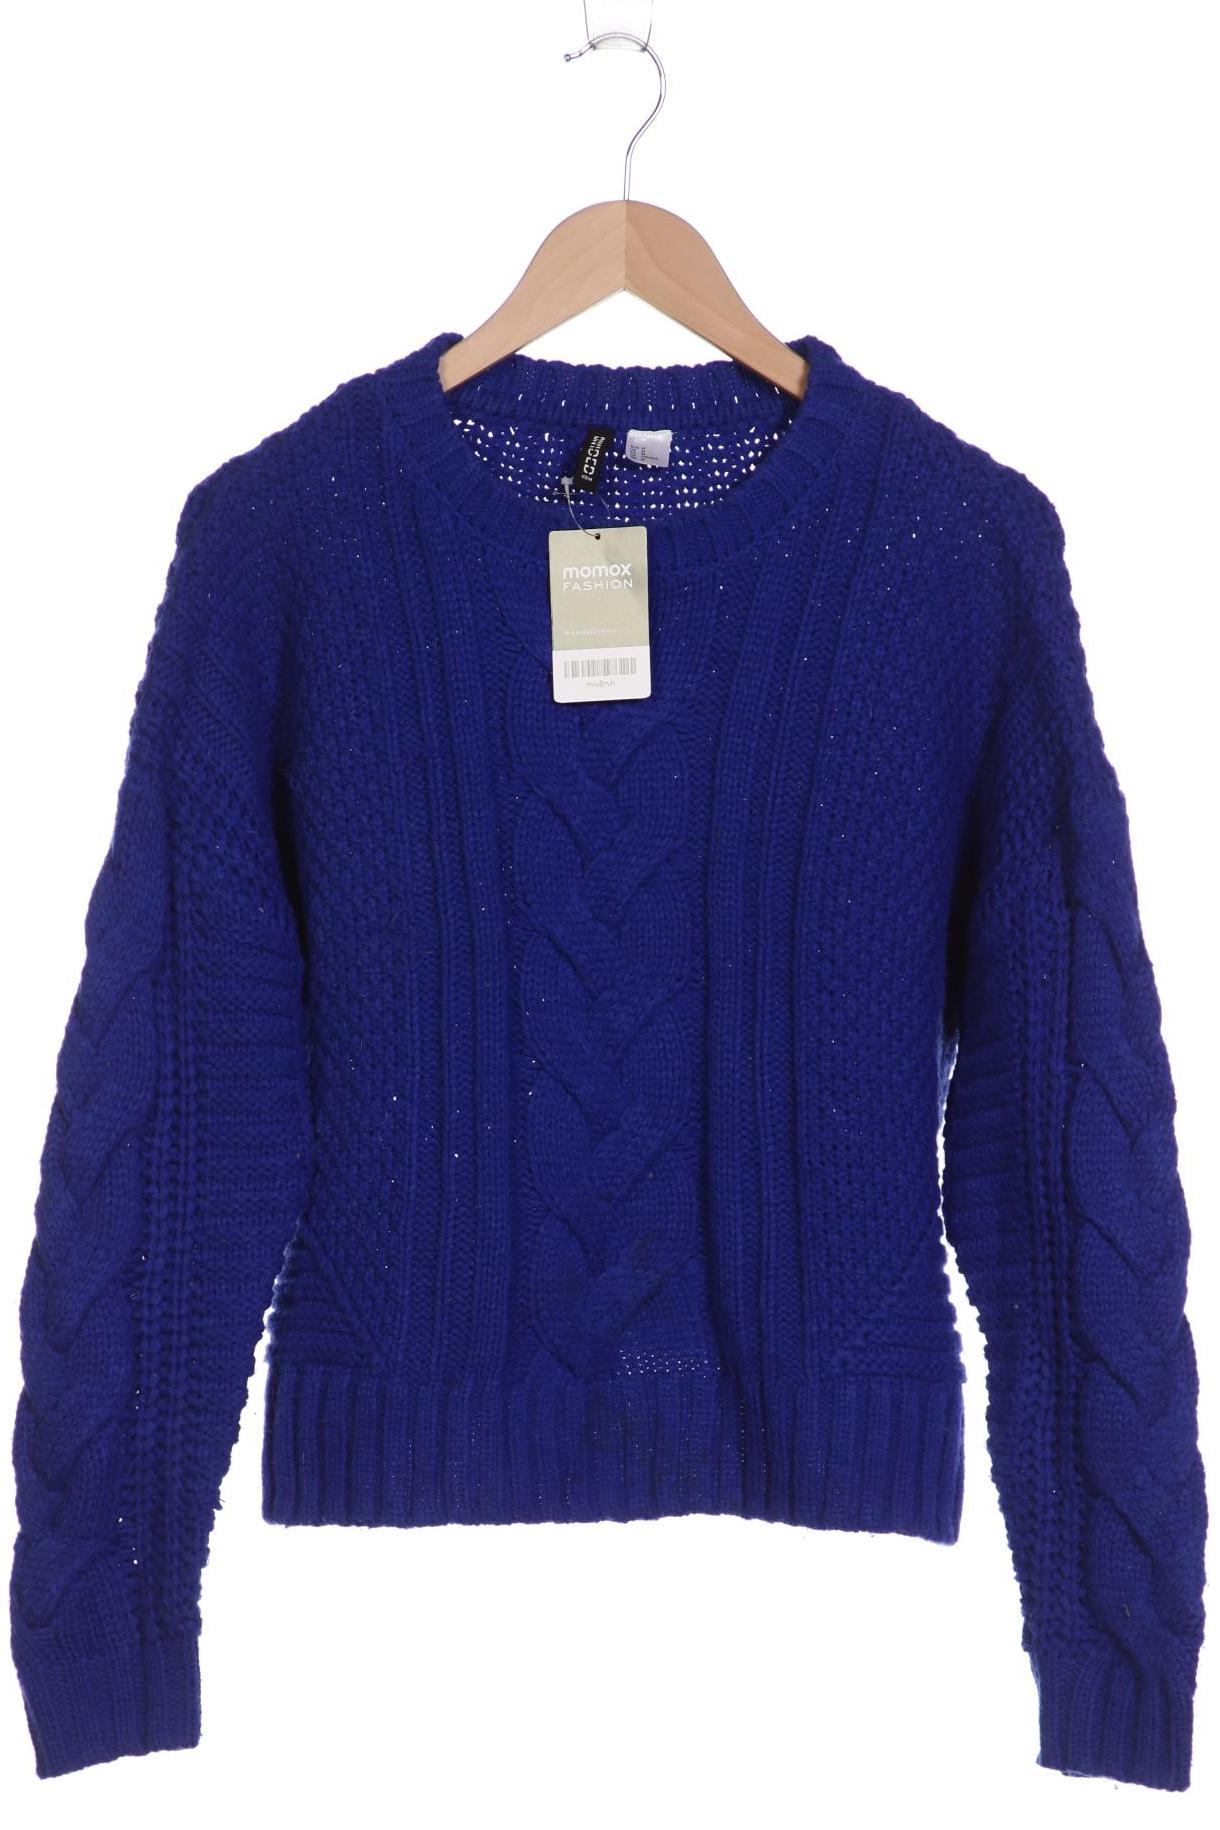 H&M Damen Pullover, blau, Gr. 38 von H&M